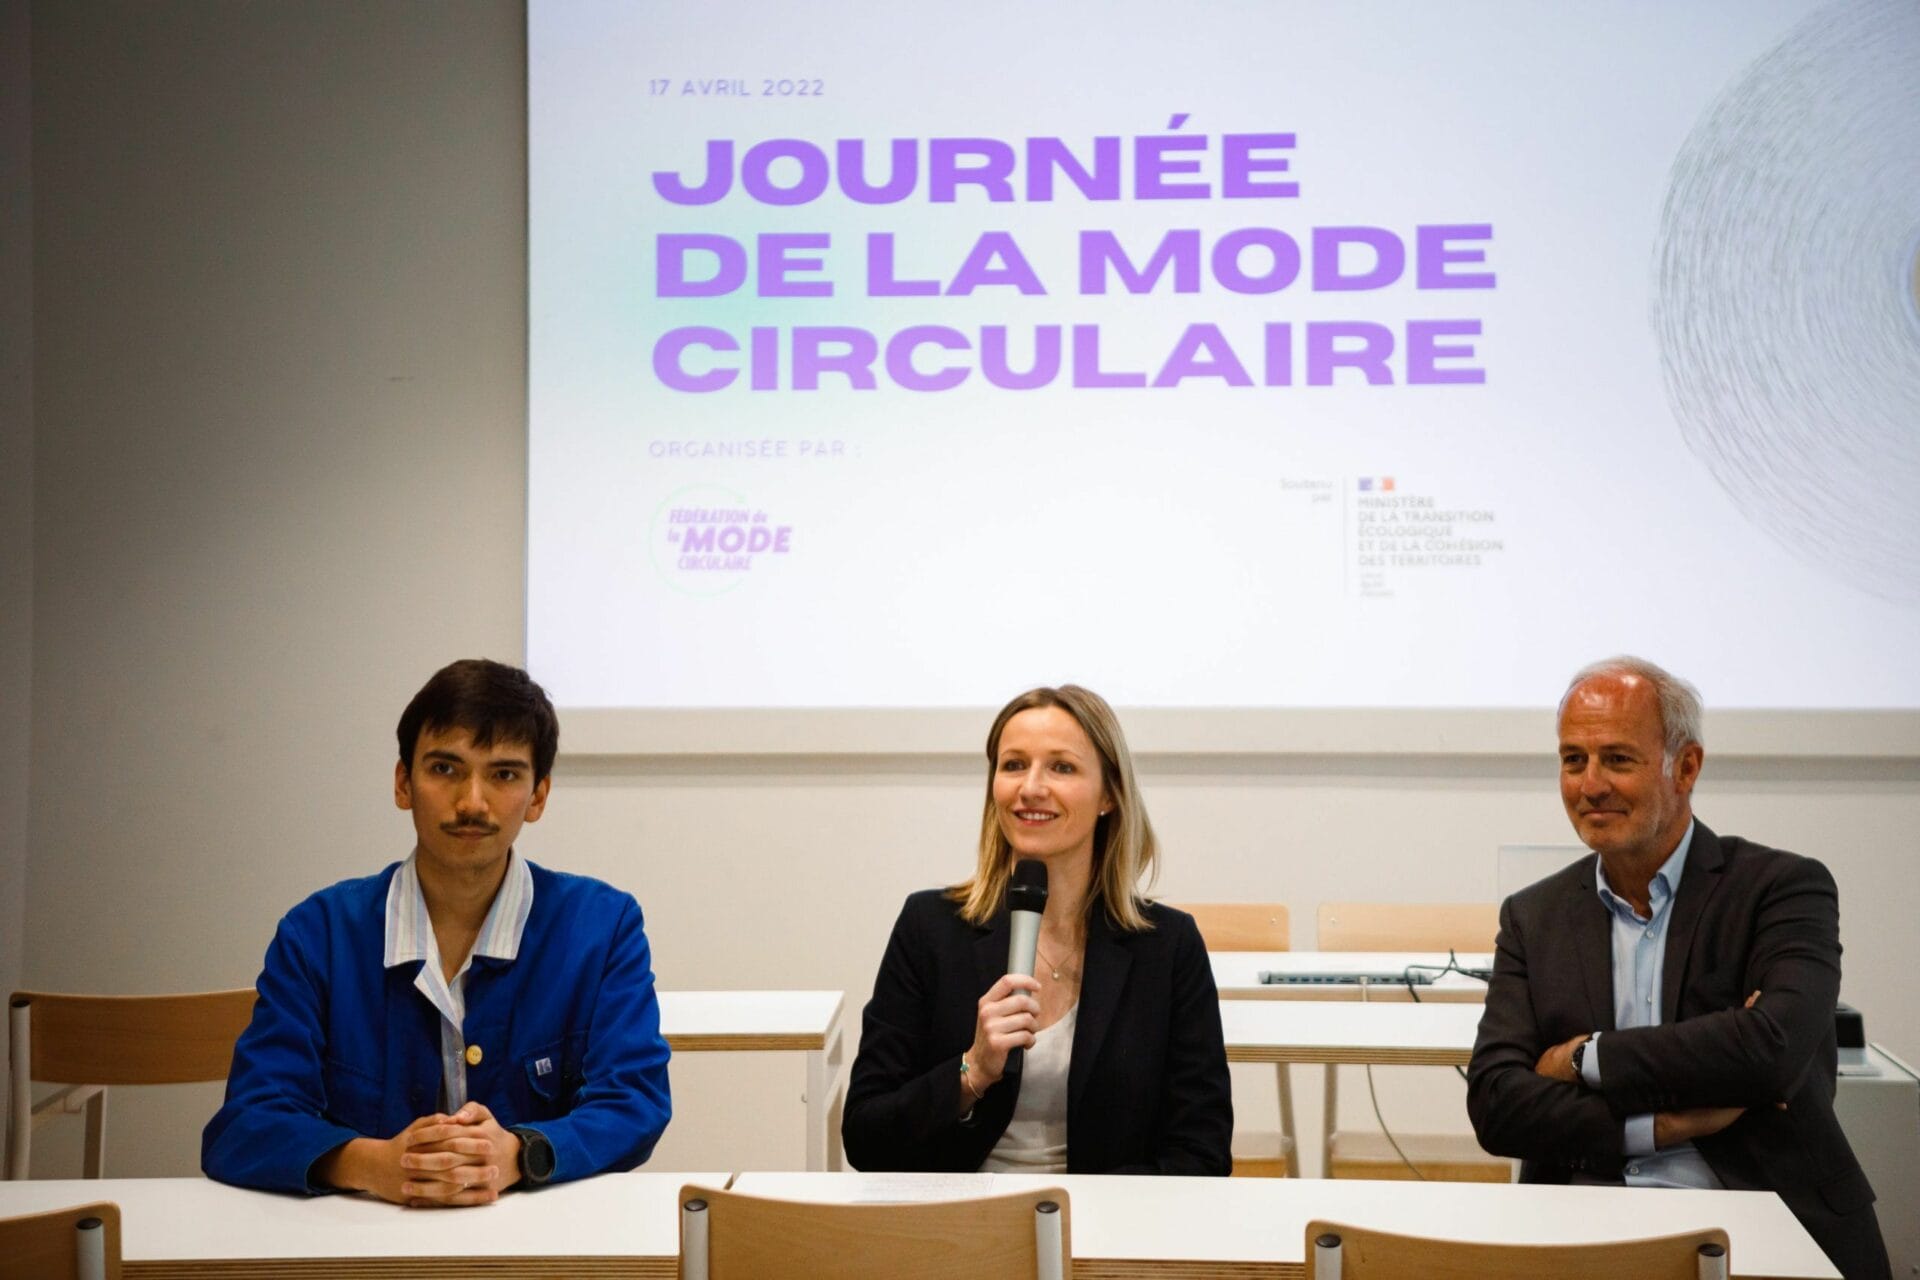 La secrétaire d'Etat Bérangère Couillard, avec à sa gauche Maxime Delavallée (Fédération de la Mode Circulaire) et Xavier Romatet (Institut Français de la Mode)